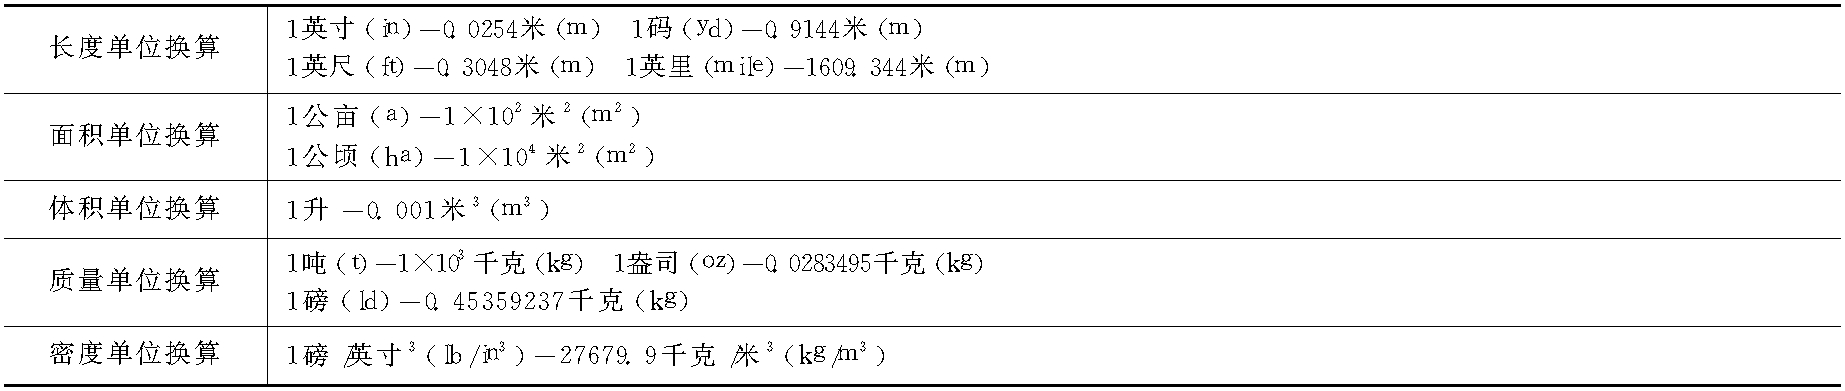 一、常用单位换算(表1-14)